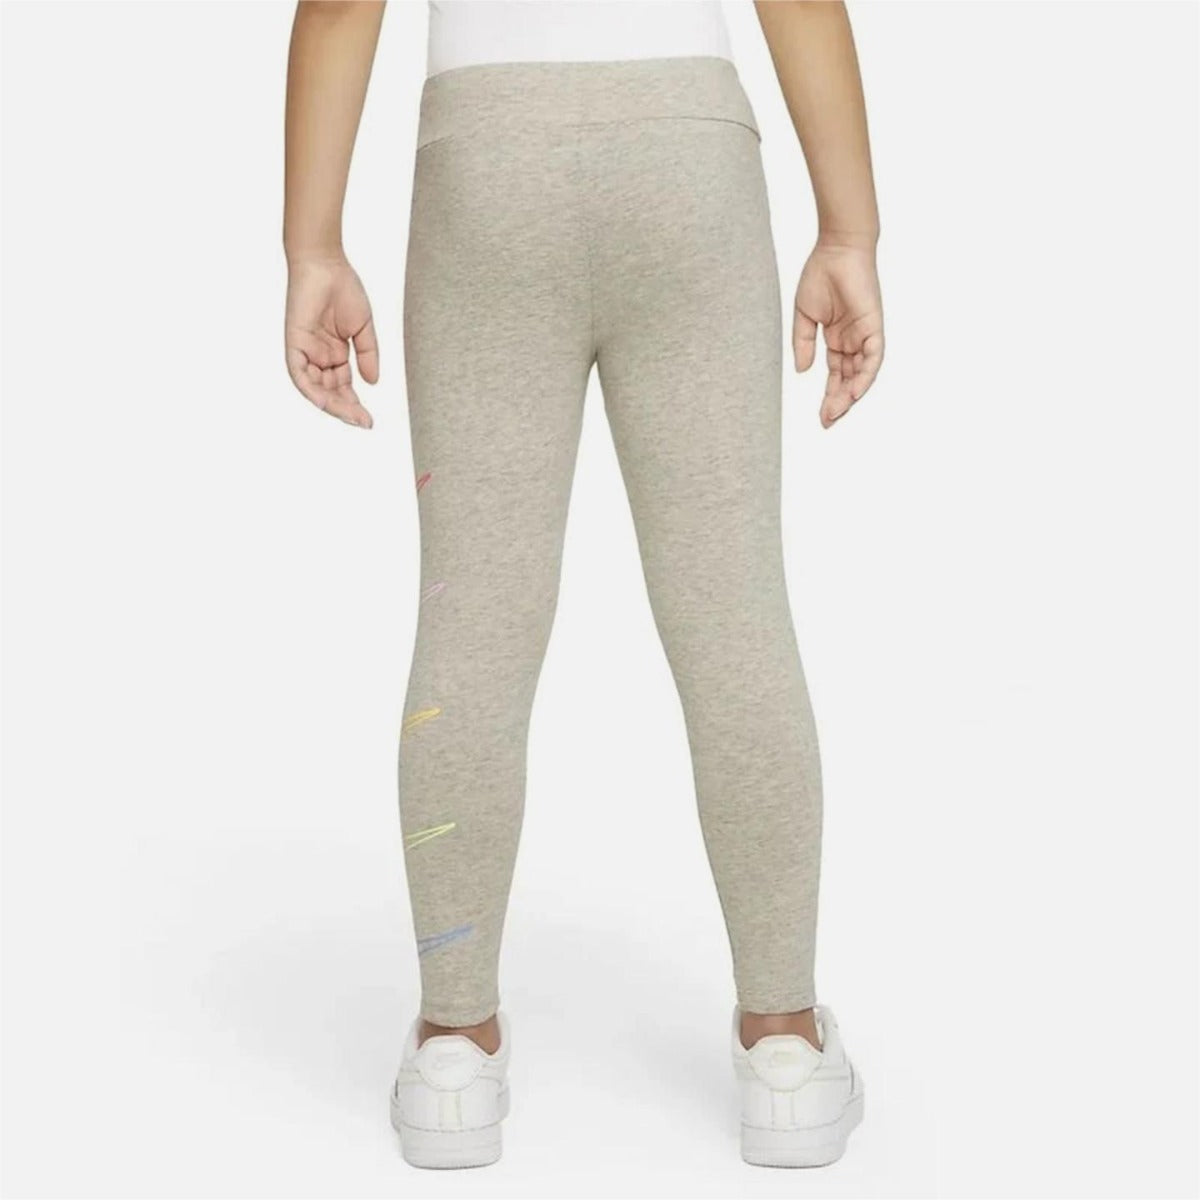 Nike Retro Rewind Legging-Hose für Kinder, Mädchen – Grau